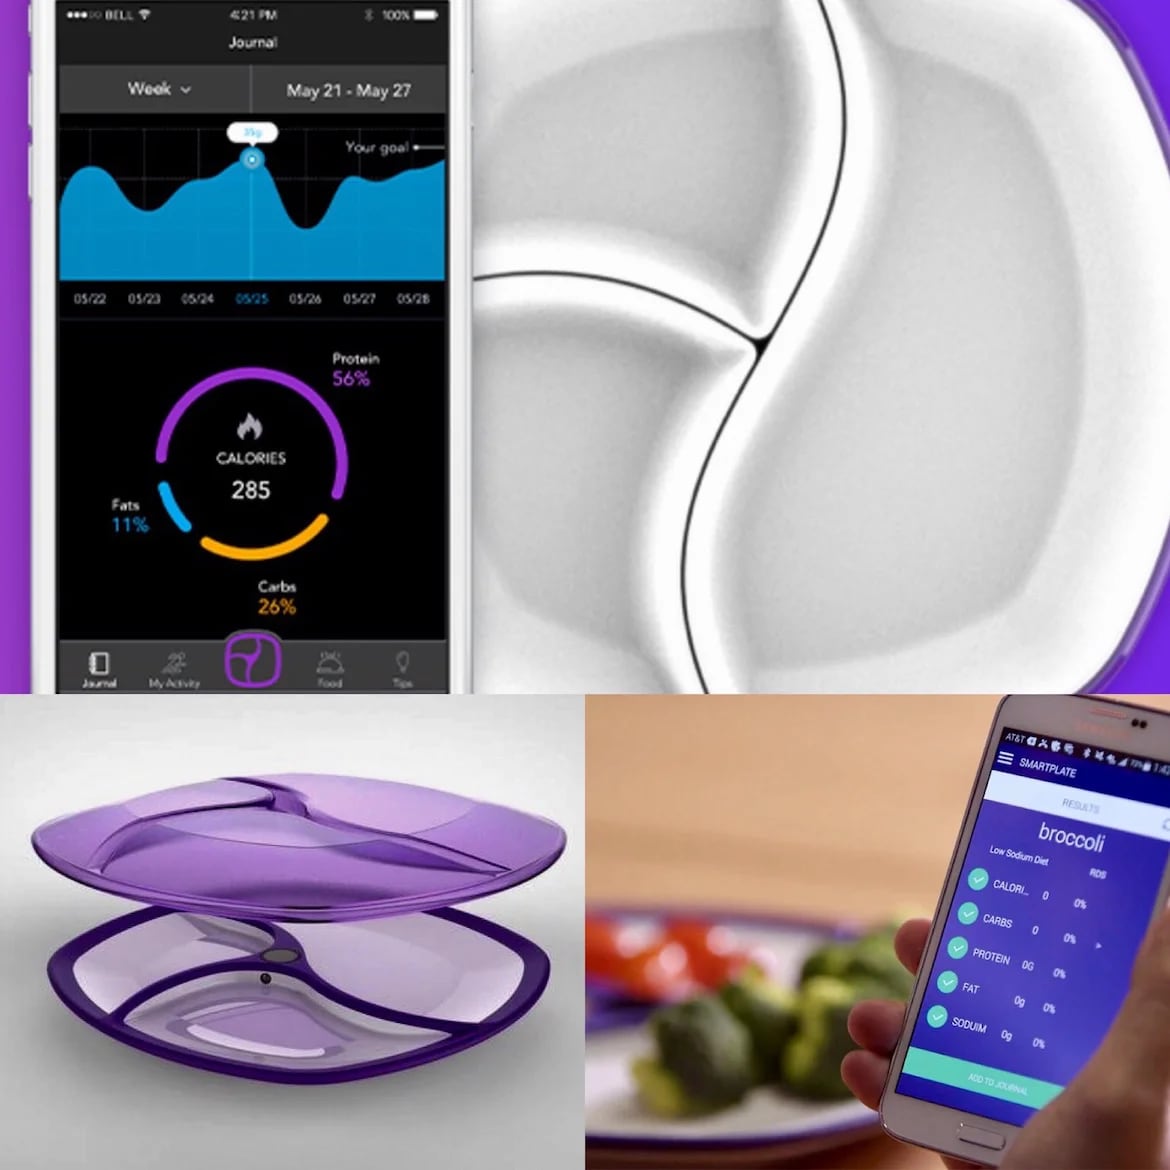 Gracias al SmartPlate TopView, ya se puede delegar por completo la tarea de contar las calorías y llevar un diario de los alimentos que se consumen